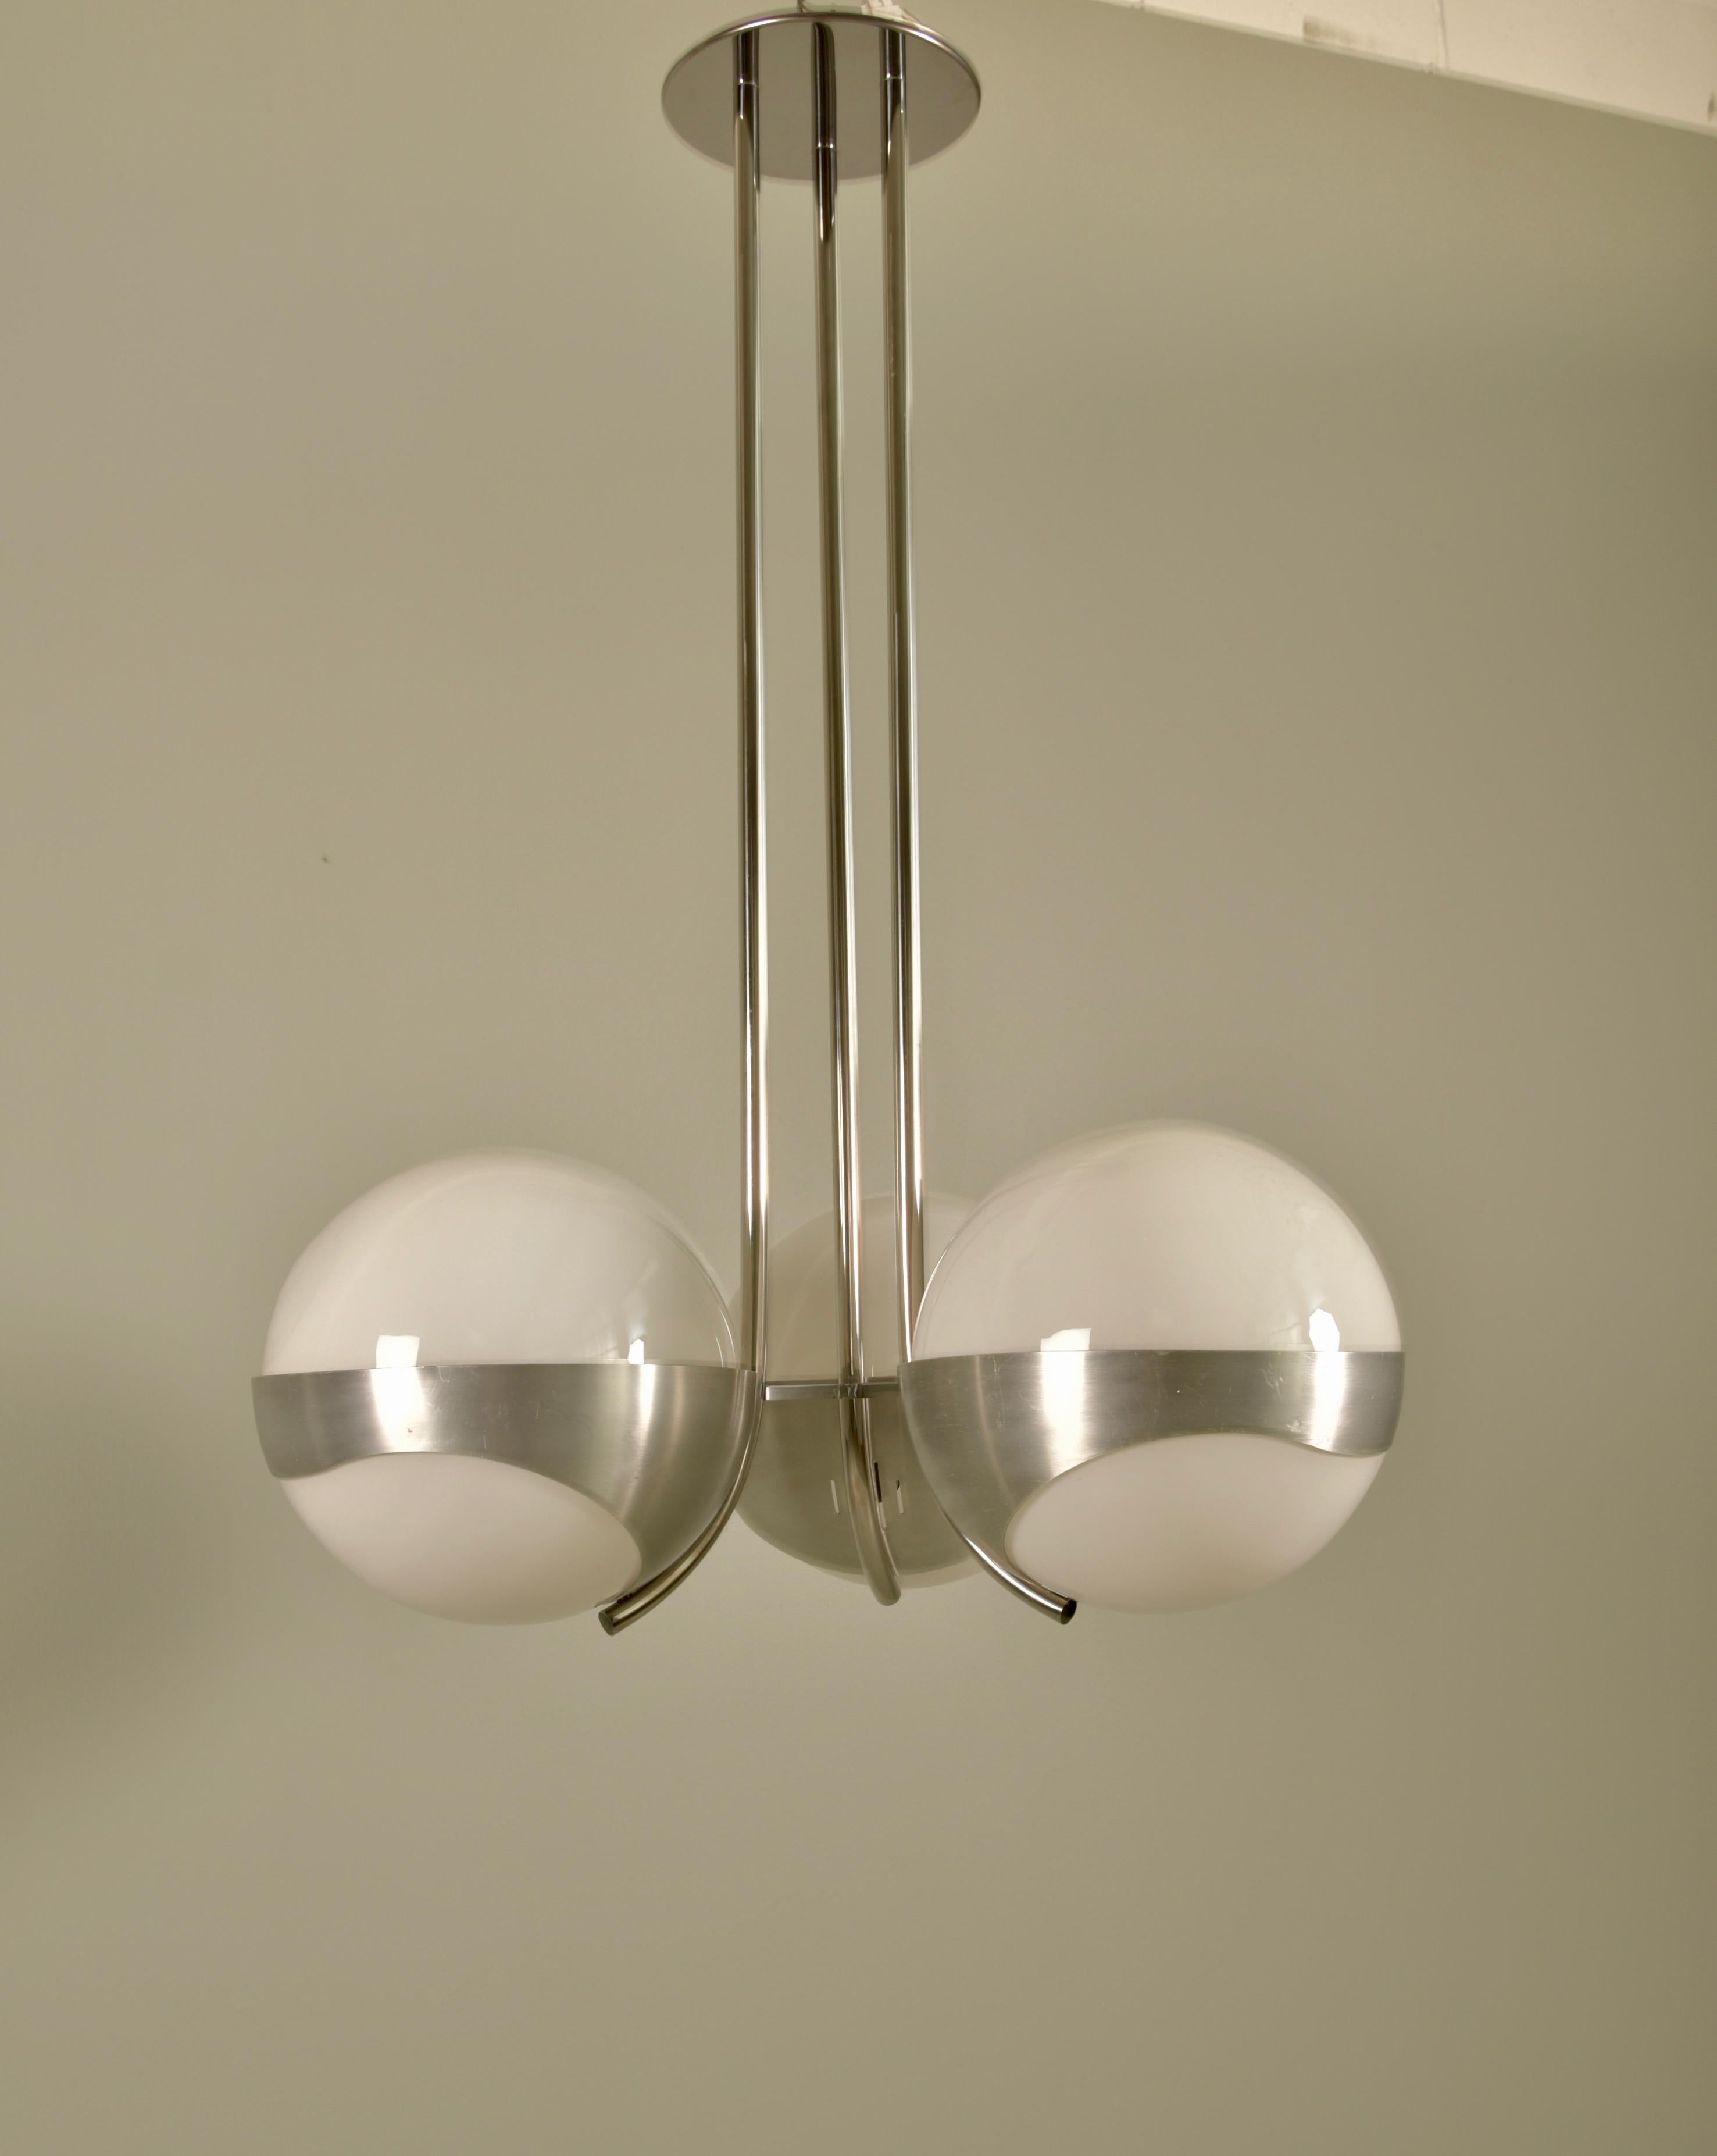 Lustre italien original des années 1970, composé d'un cadre en acier brossé et poli et de grands globes en verre opalin blanc.